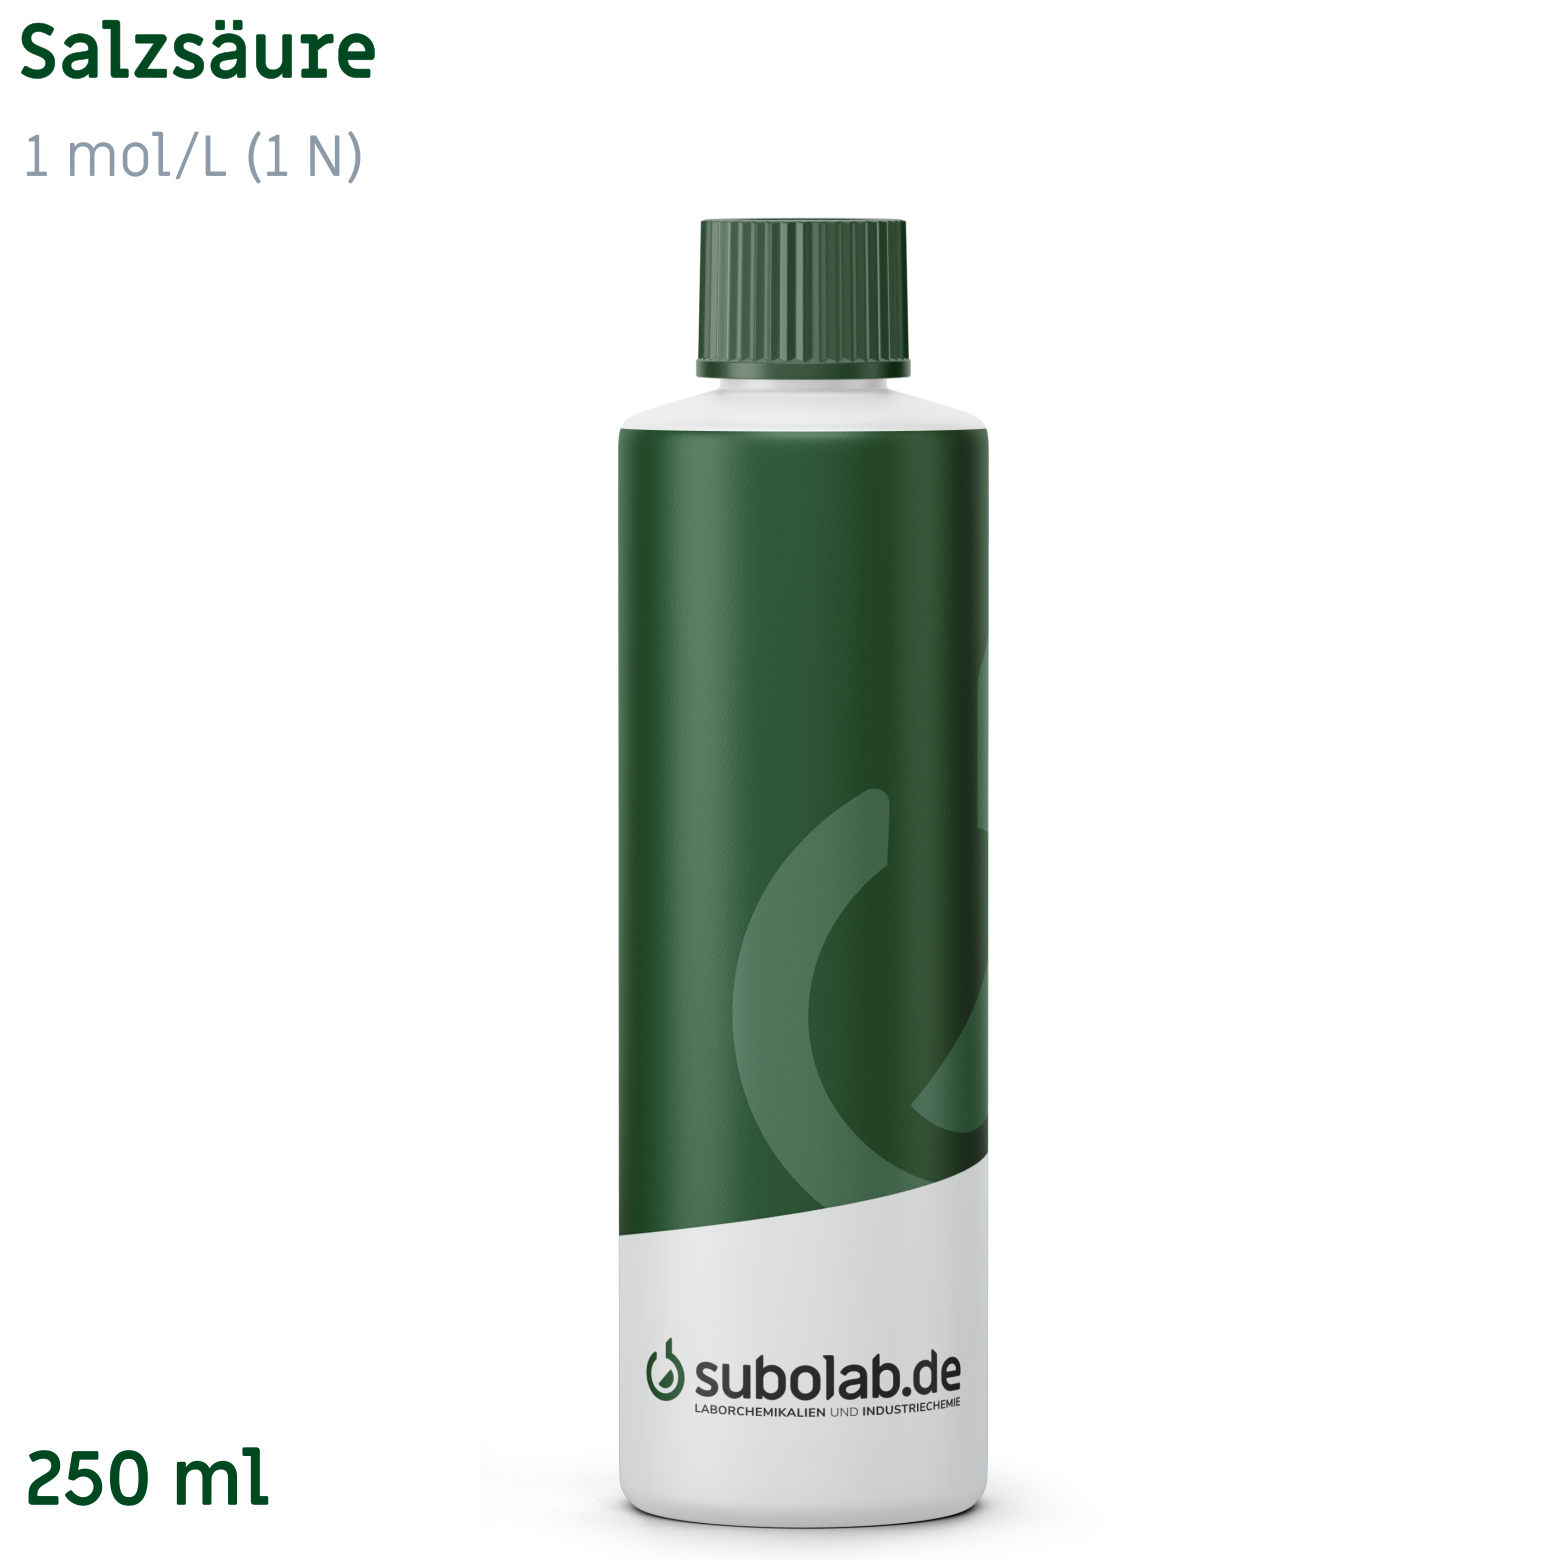 Bild von Salzsäure 1 mol/L (1 N) (250 ml)